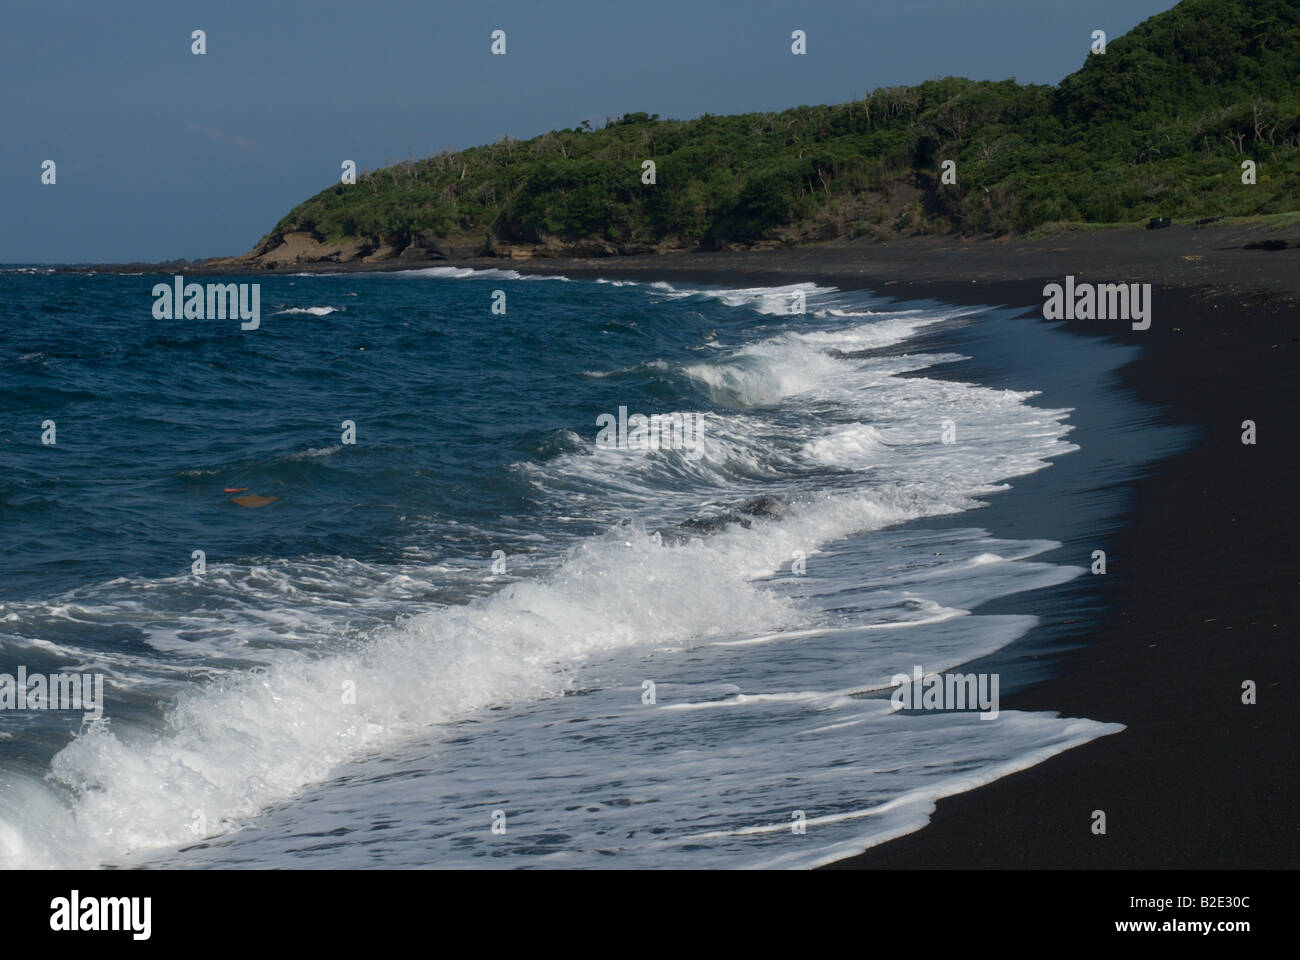 Sanohama spiaggia con onde che si infrangono sulla sabbia nera vulcanica, Izu Oshima, Isole Izu, Giappone. Foto Stock